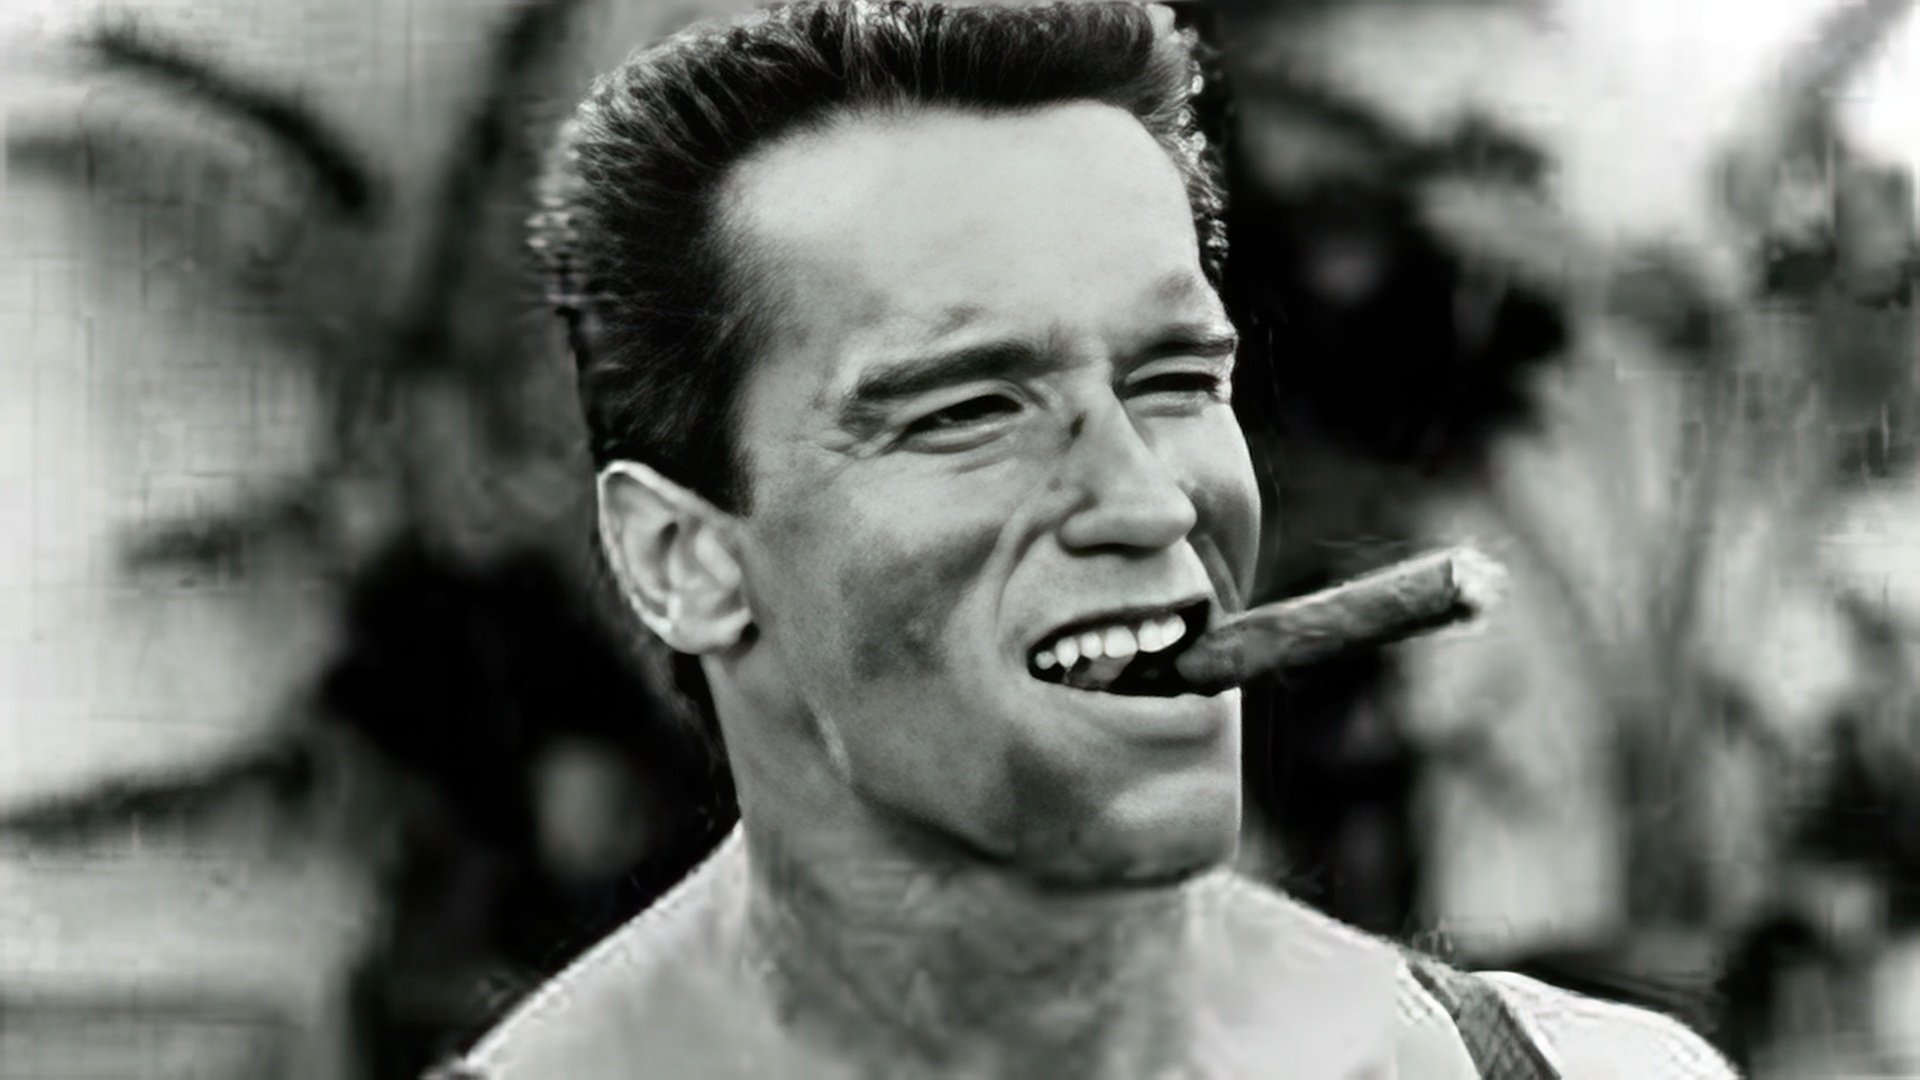 Schwarzenegger holds conservative views